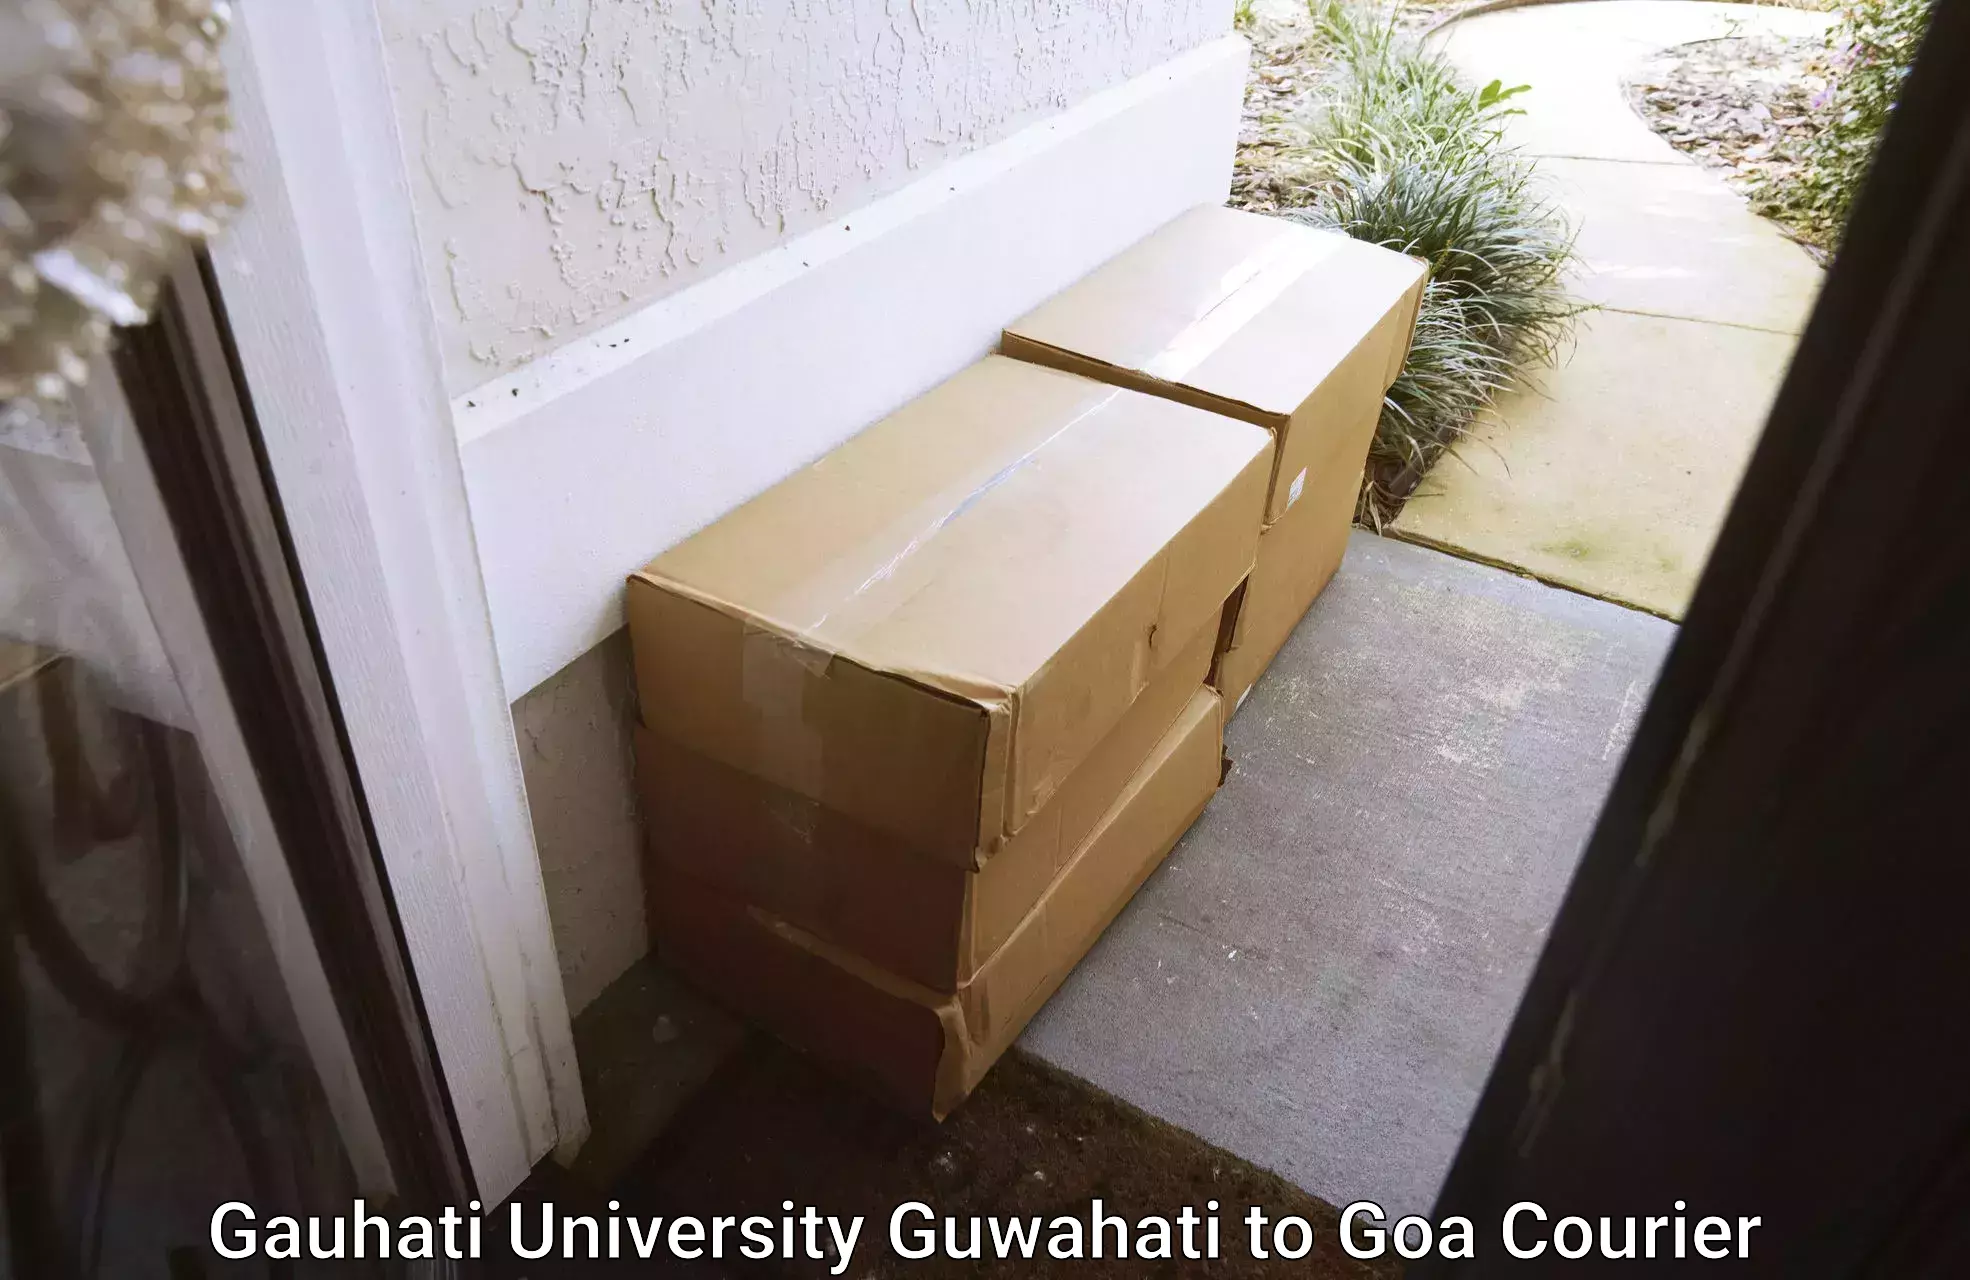 Courier membership in Gauhati University Guwahati to Vasco da Gama